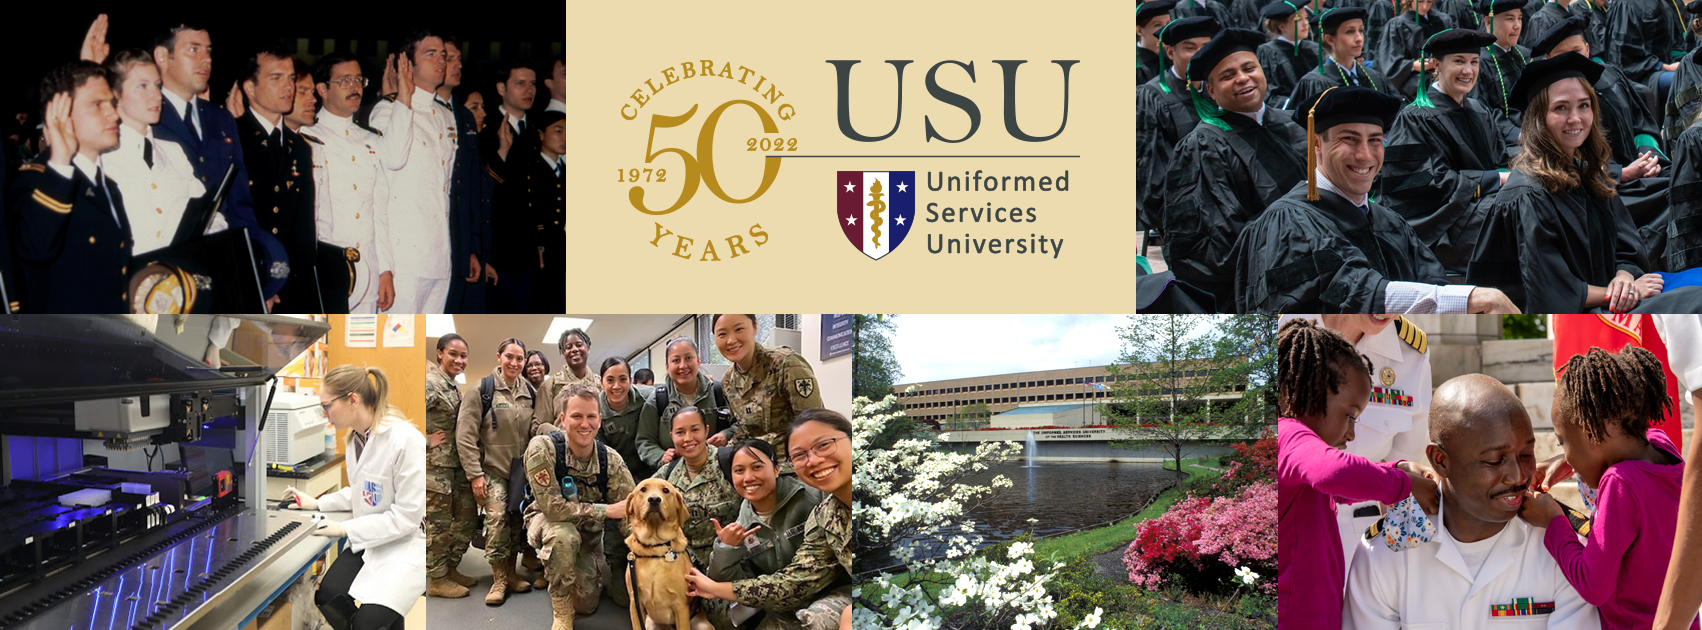 USU 50th Facebook Cover Collage